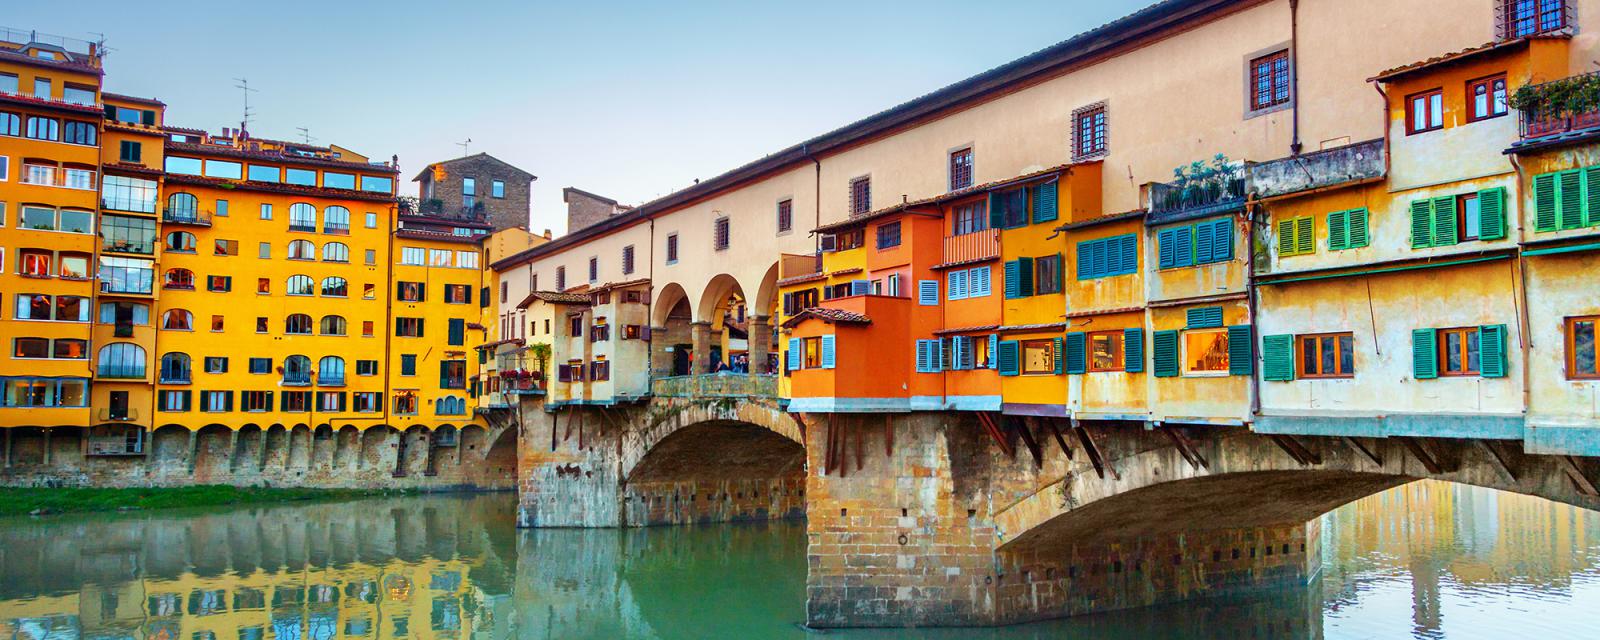 De mooiste fotoplekken voor je stedentrip naar Florence 